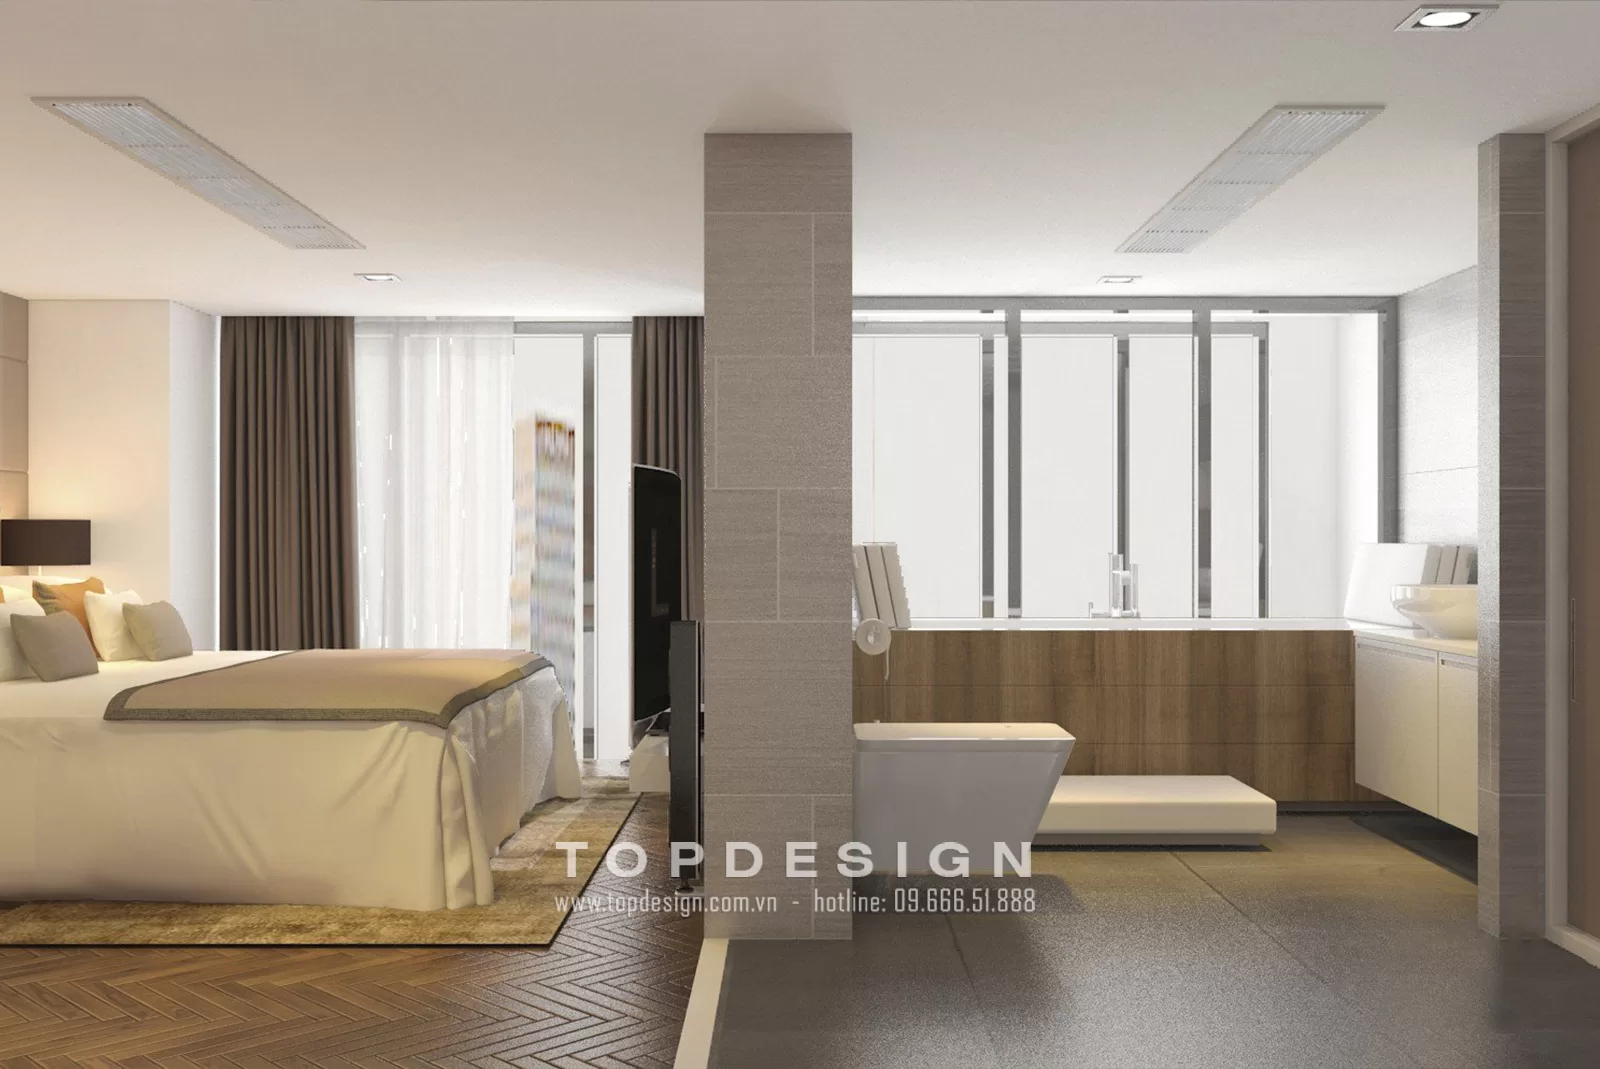 Thiết kế nội thất nhà phố hiện đại - Topdesign 07